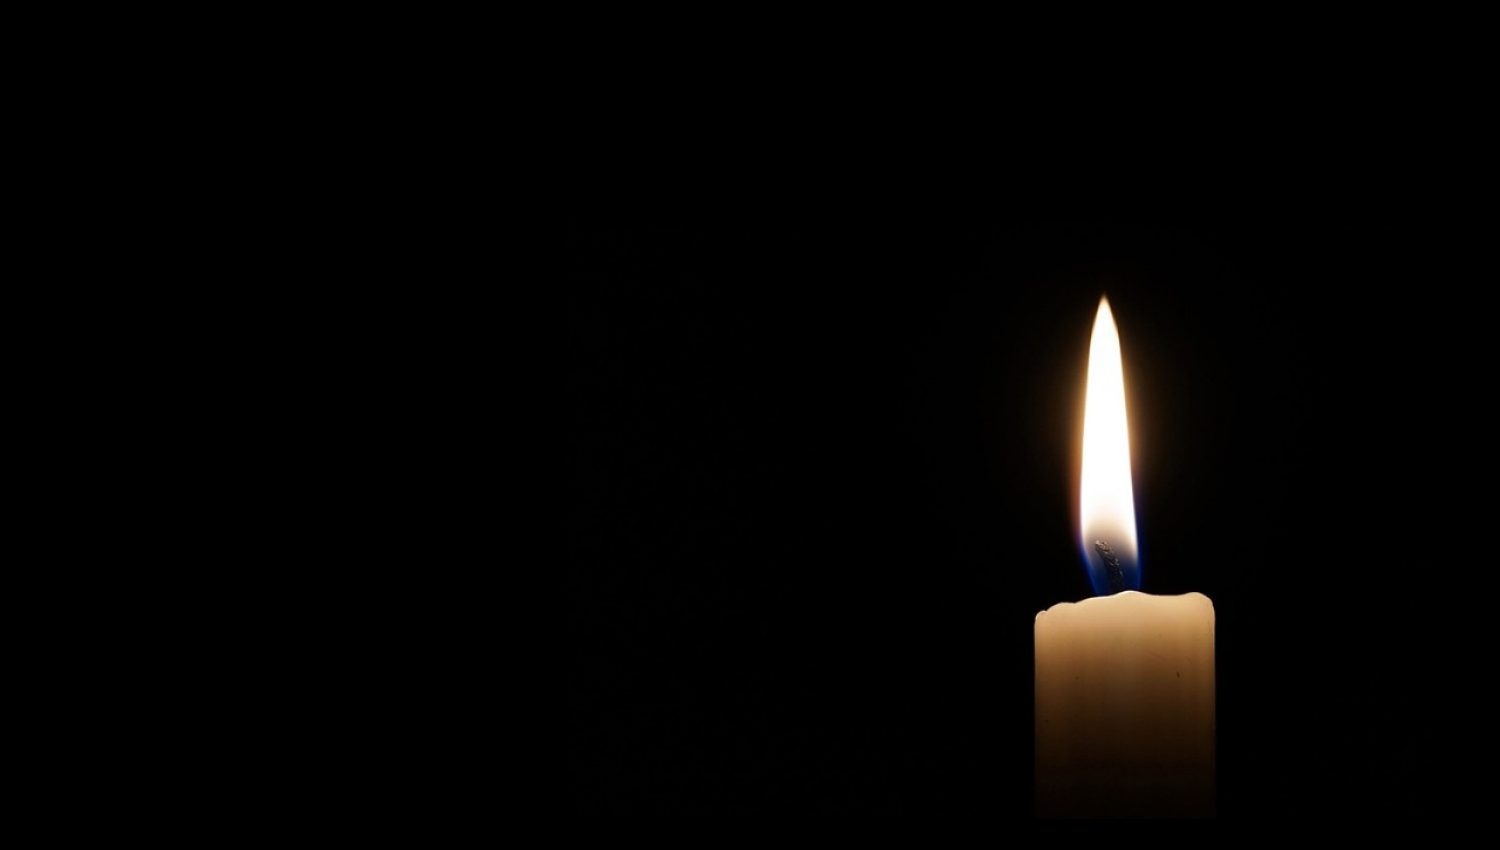 A lit candle against a black backdrop